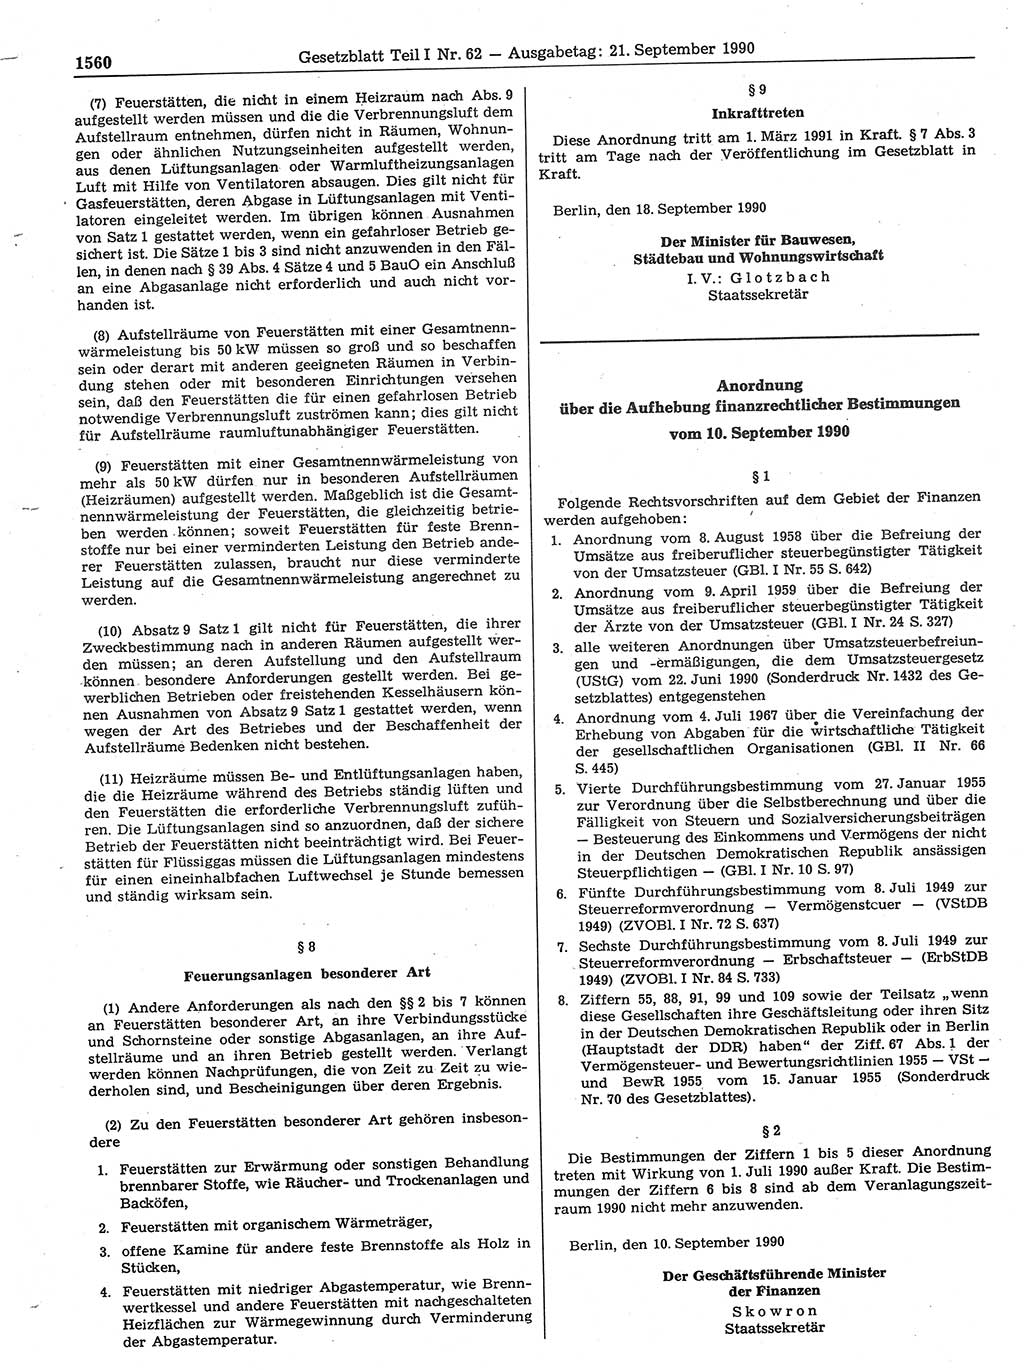 Gesetzblatt (GBl.) der Deutschen Demokratischen Republik (DDR) Teil Ⅰ 1990, Seite 1560 (GBl. DDR Ⅰ 1990, S. 1560)